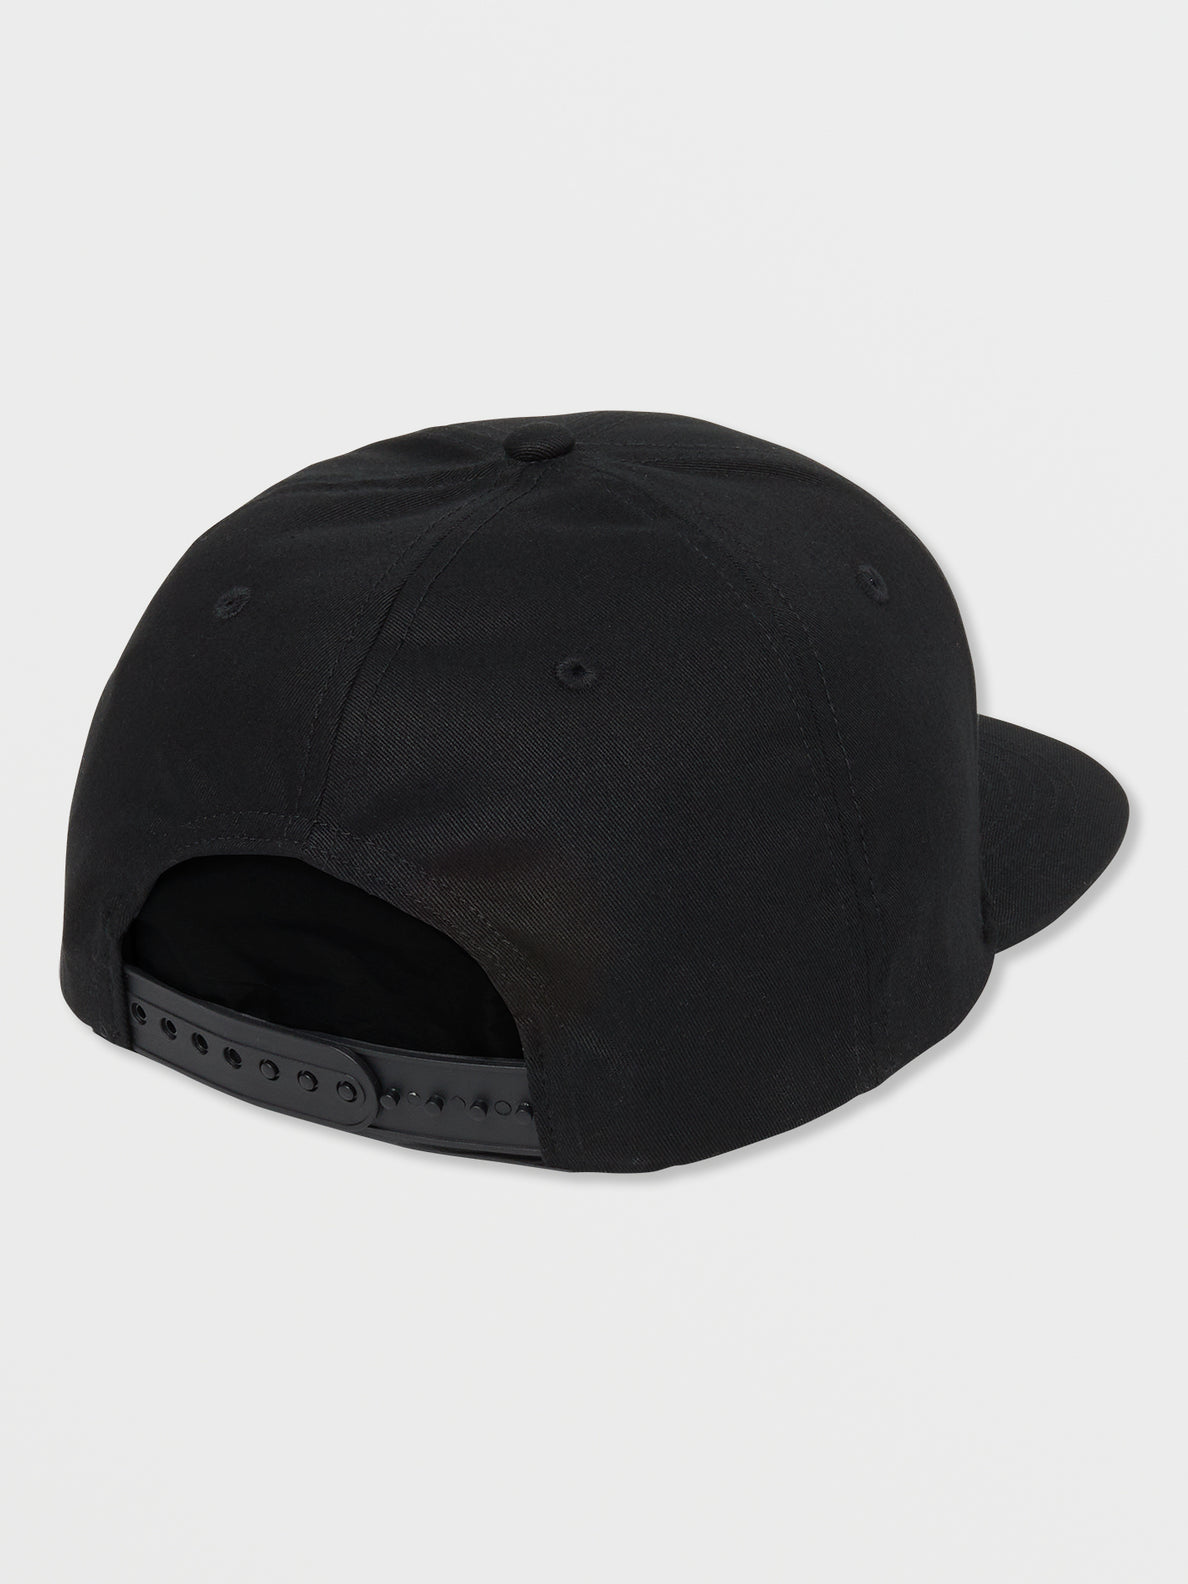 V Square Snapback Hat - Black